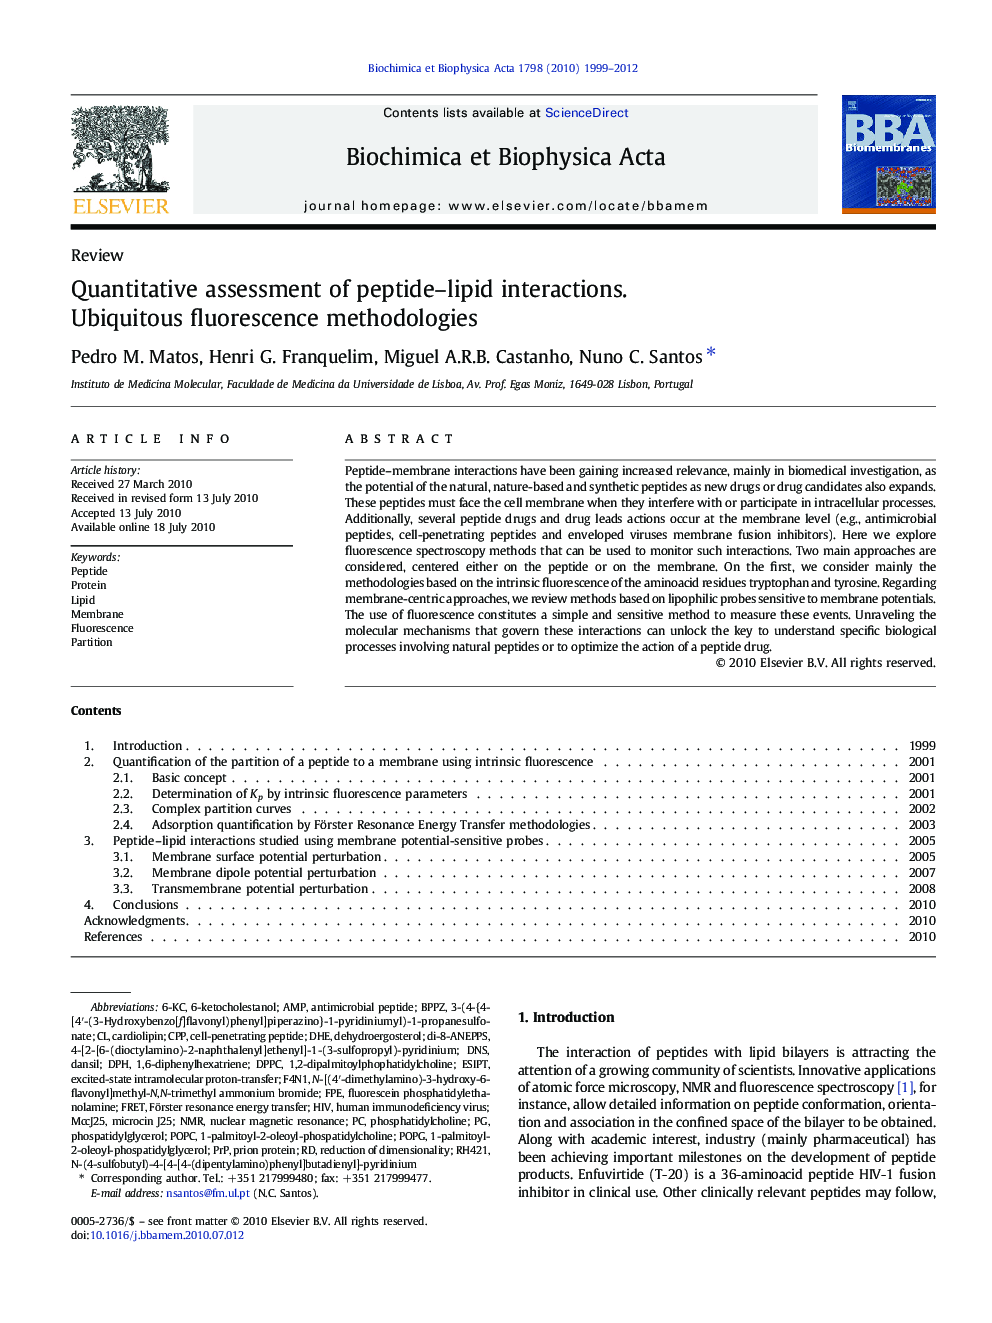 Quantitative assessment of peptide–lipid interactions.: Ubiquitous fluorescence methodologies